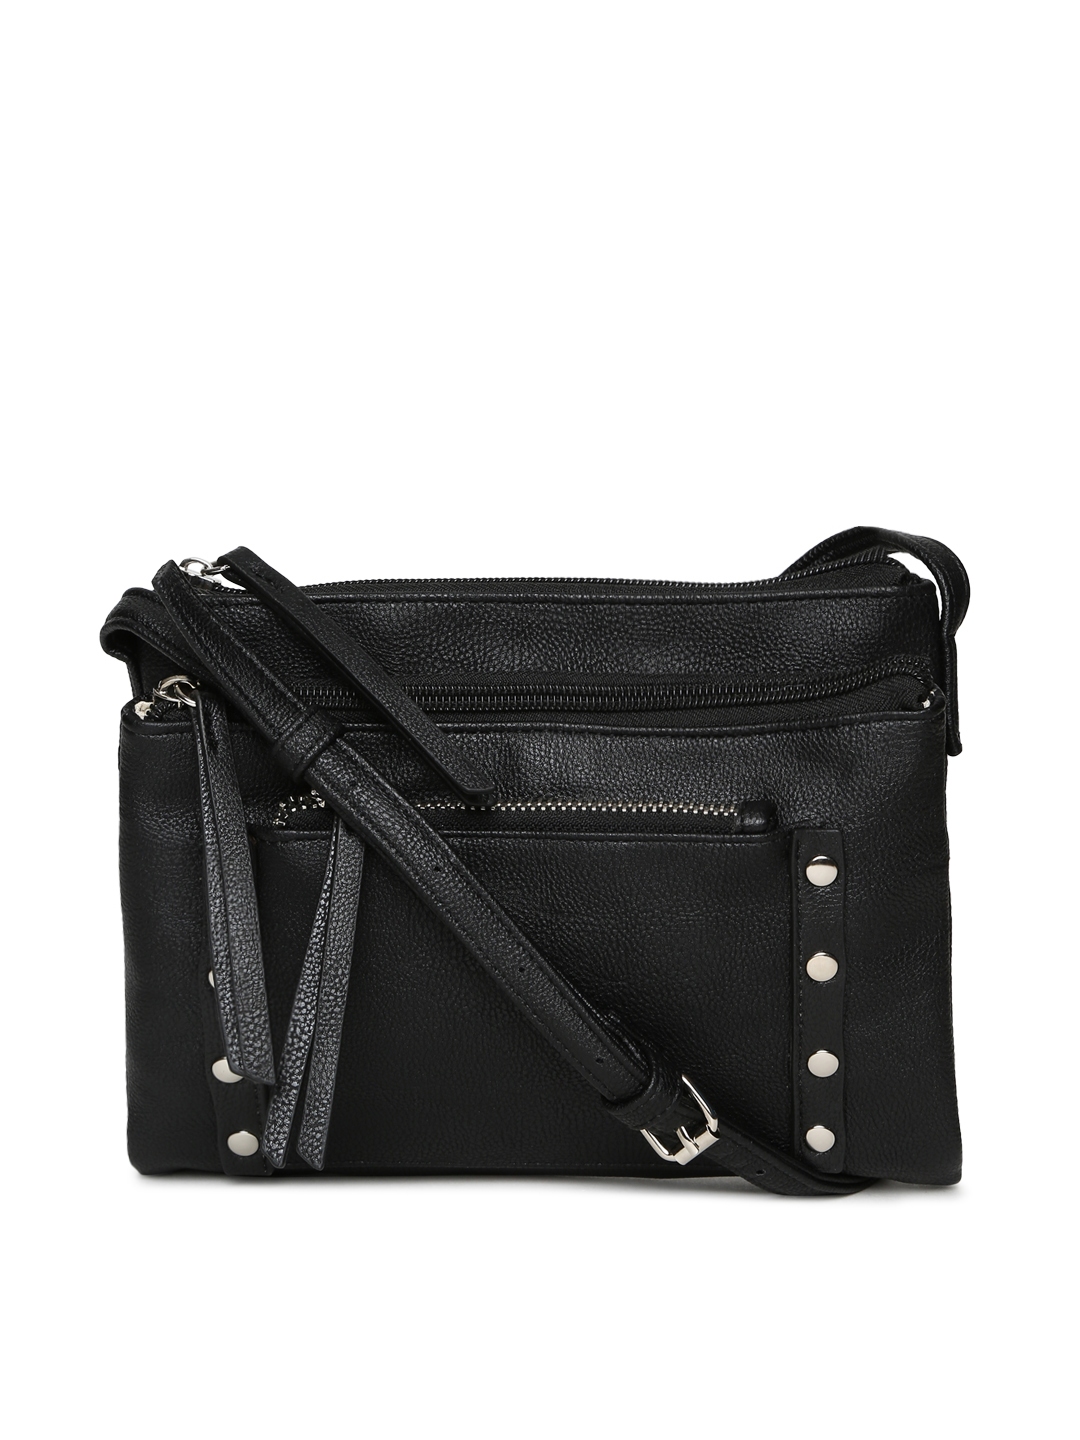 Buy Steve Madden Black Solid Sling Bag - Handbags for Women 1438577 ...